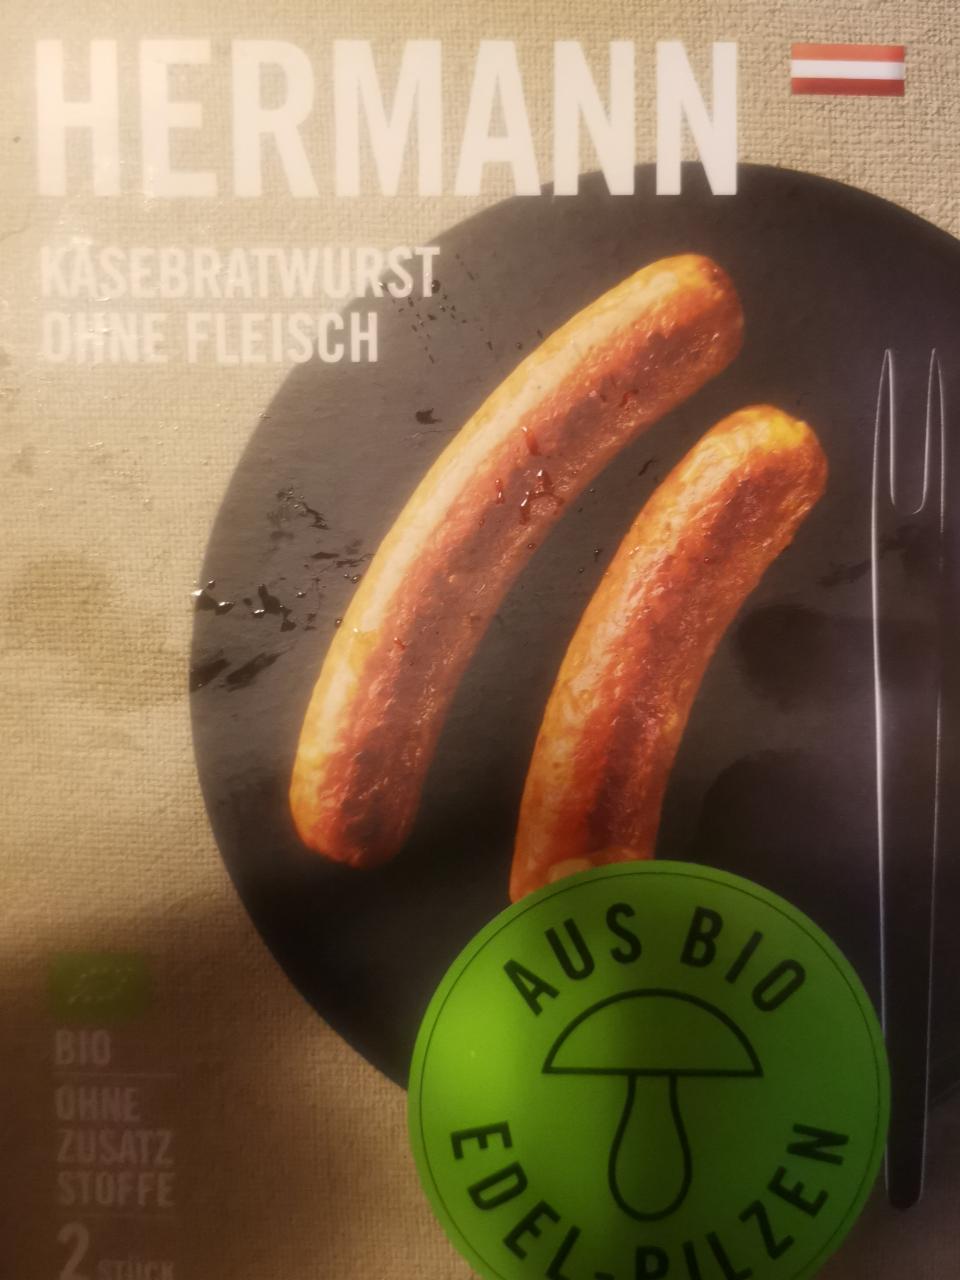 Fotografie - käsebratwurst ohne fleisch Hermann